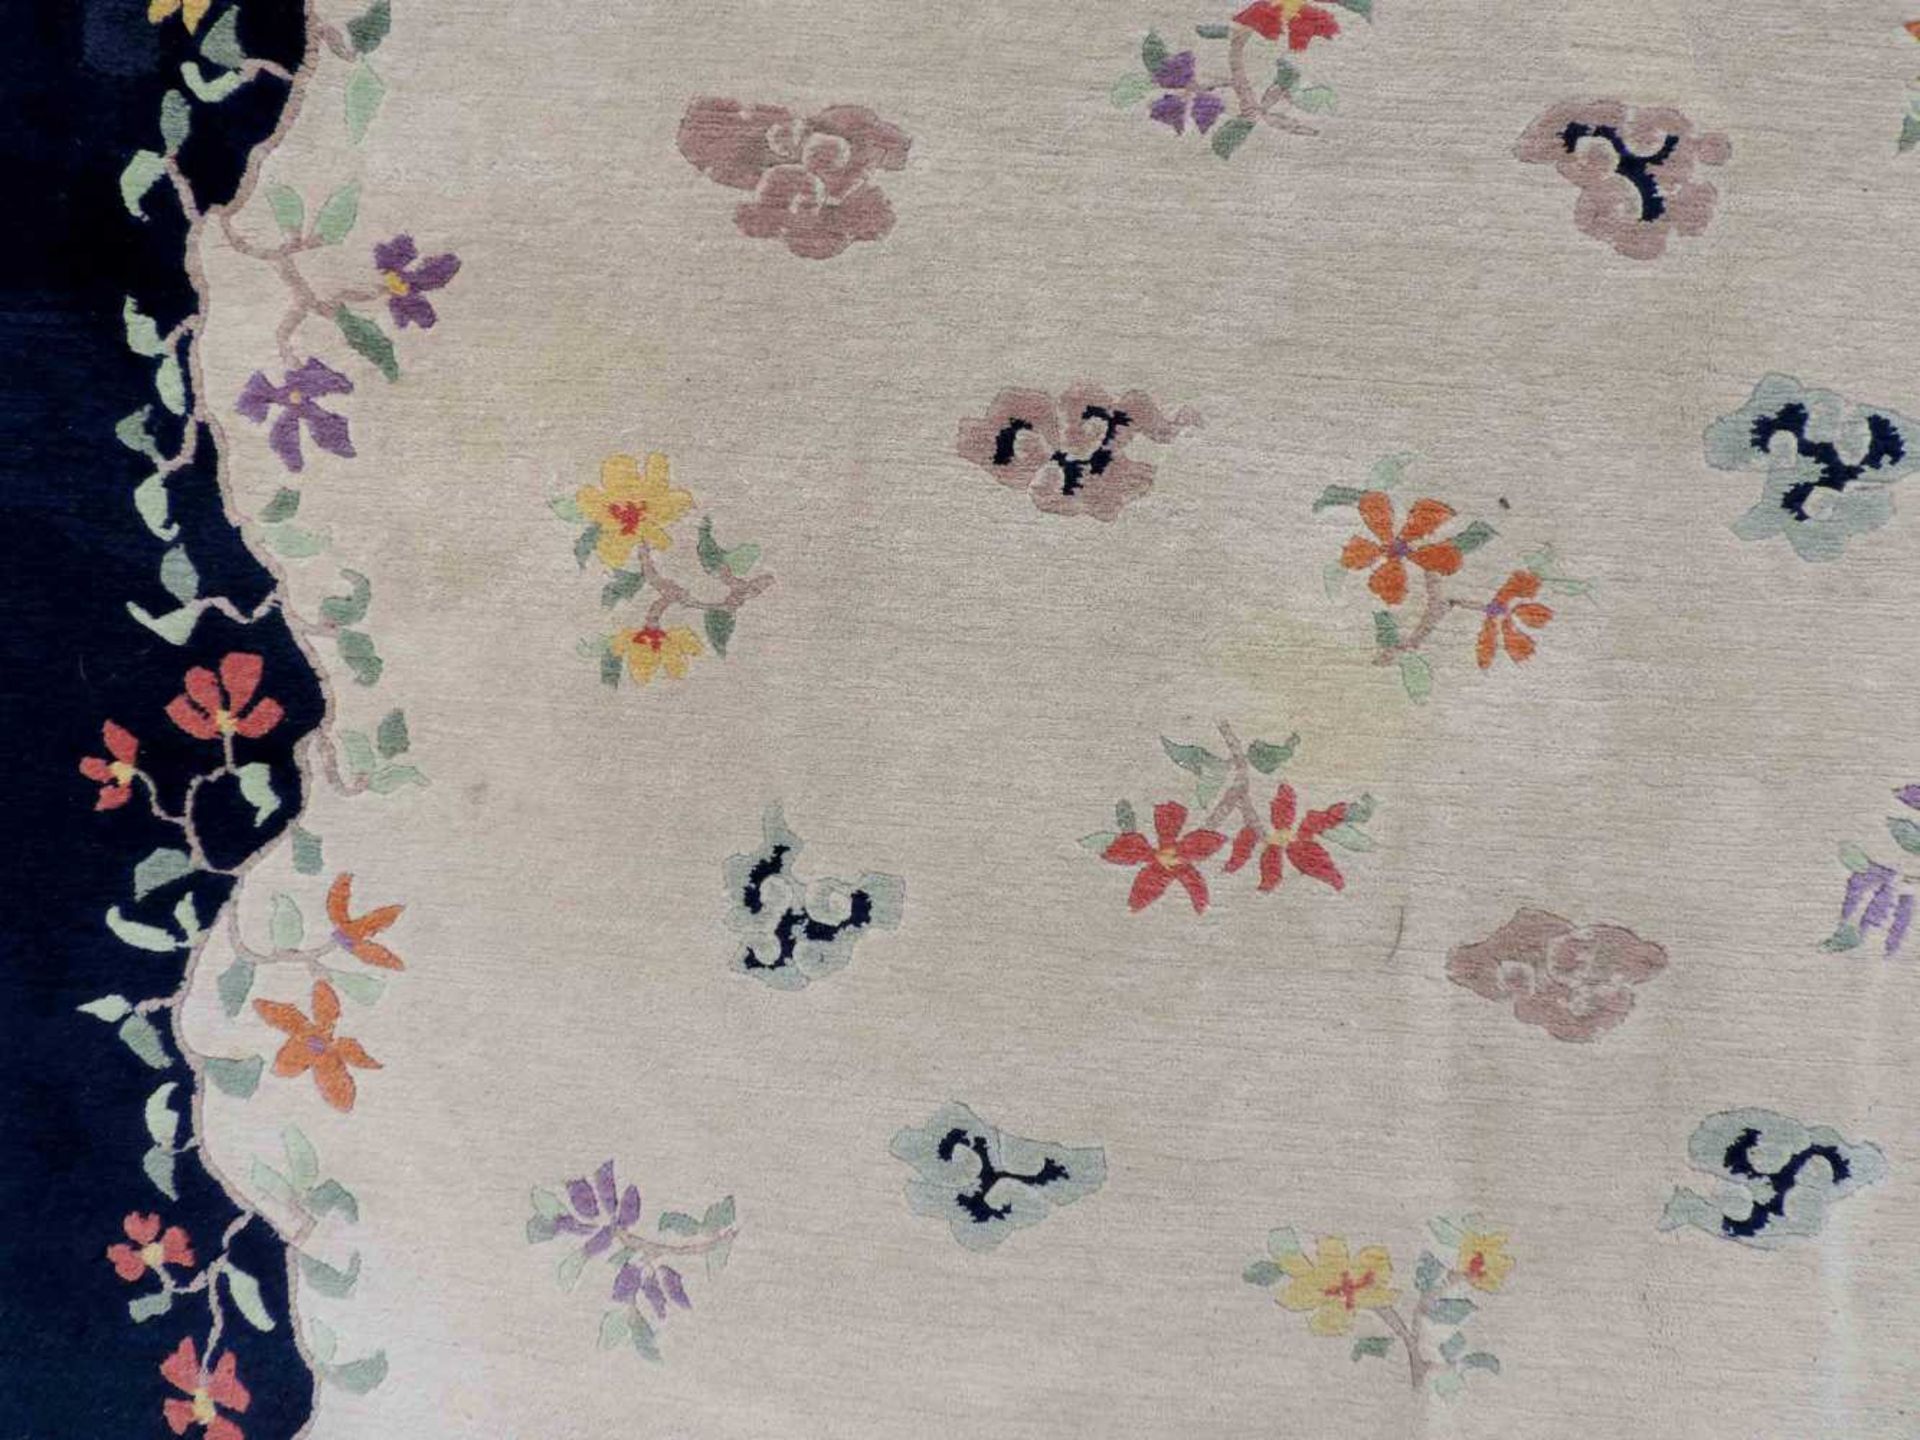 Blütenteppich China. 245 cm x 167 cm. Handgeknüpft, Wolle auf Baumwolle. Blossoms carpet China. - Bild 11 aus 12